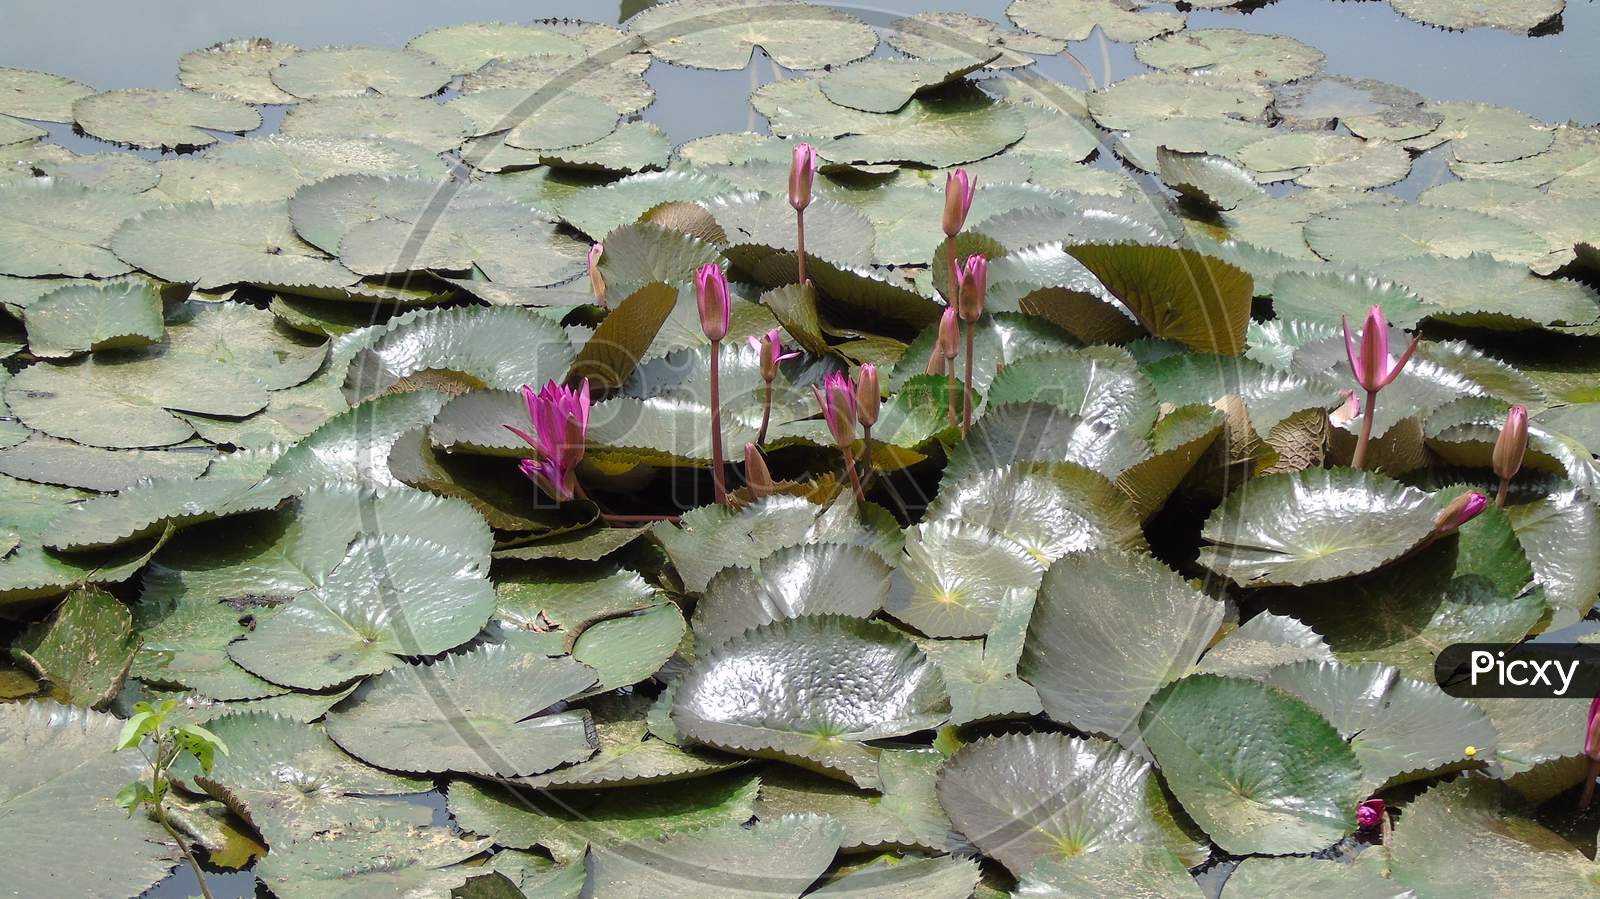 cute lotus flower